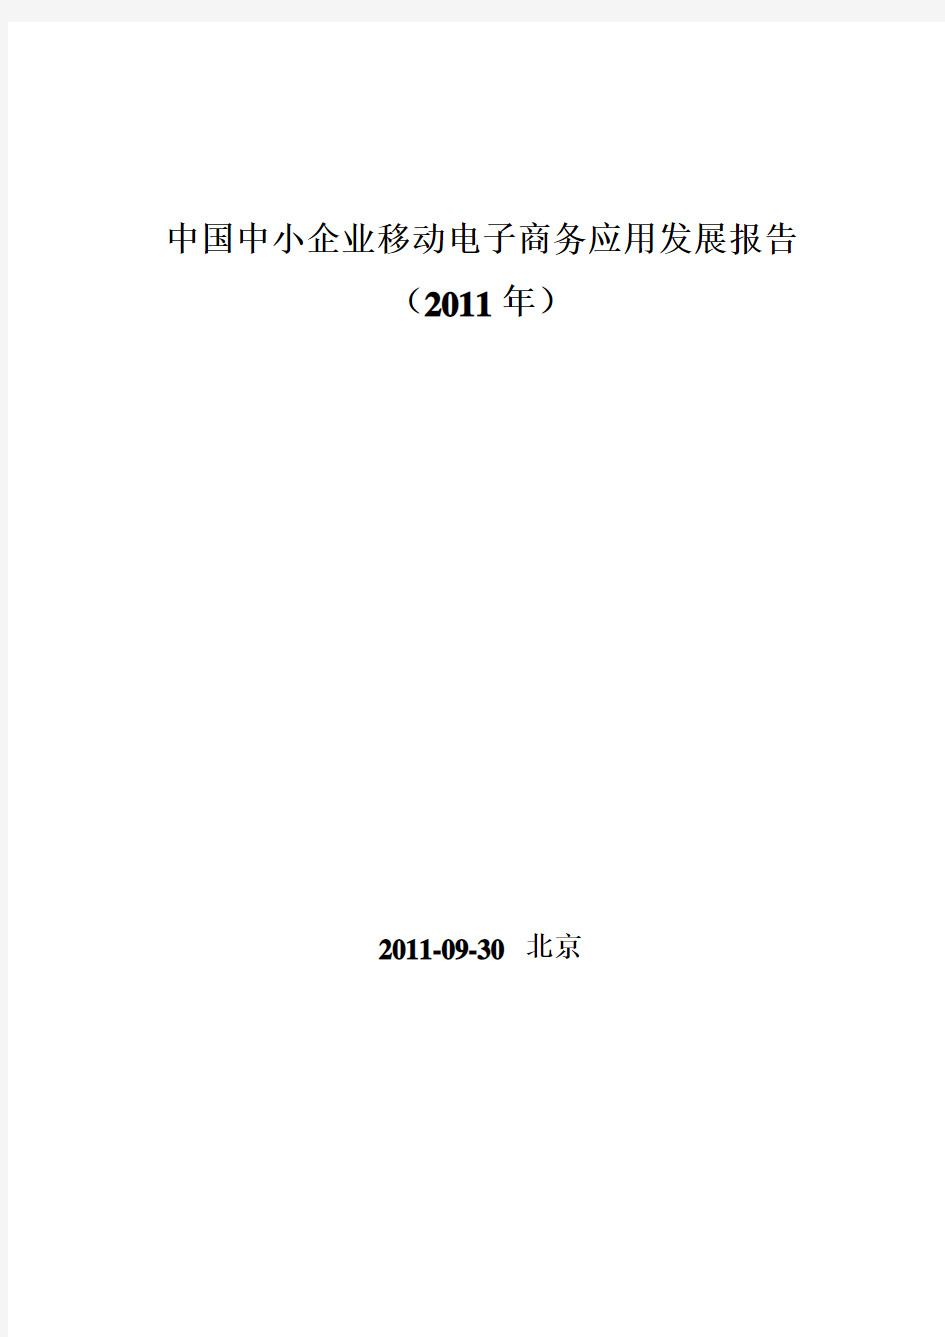 中国中小企业移动电子商务应用发展报告(2011年)